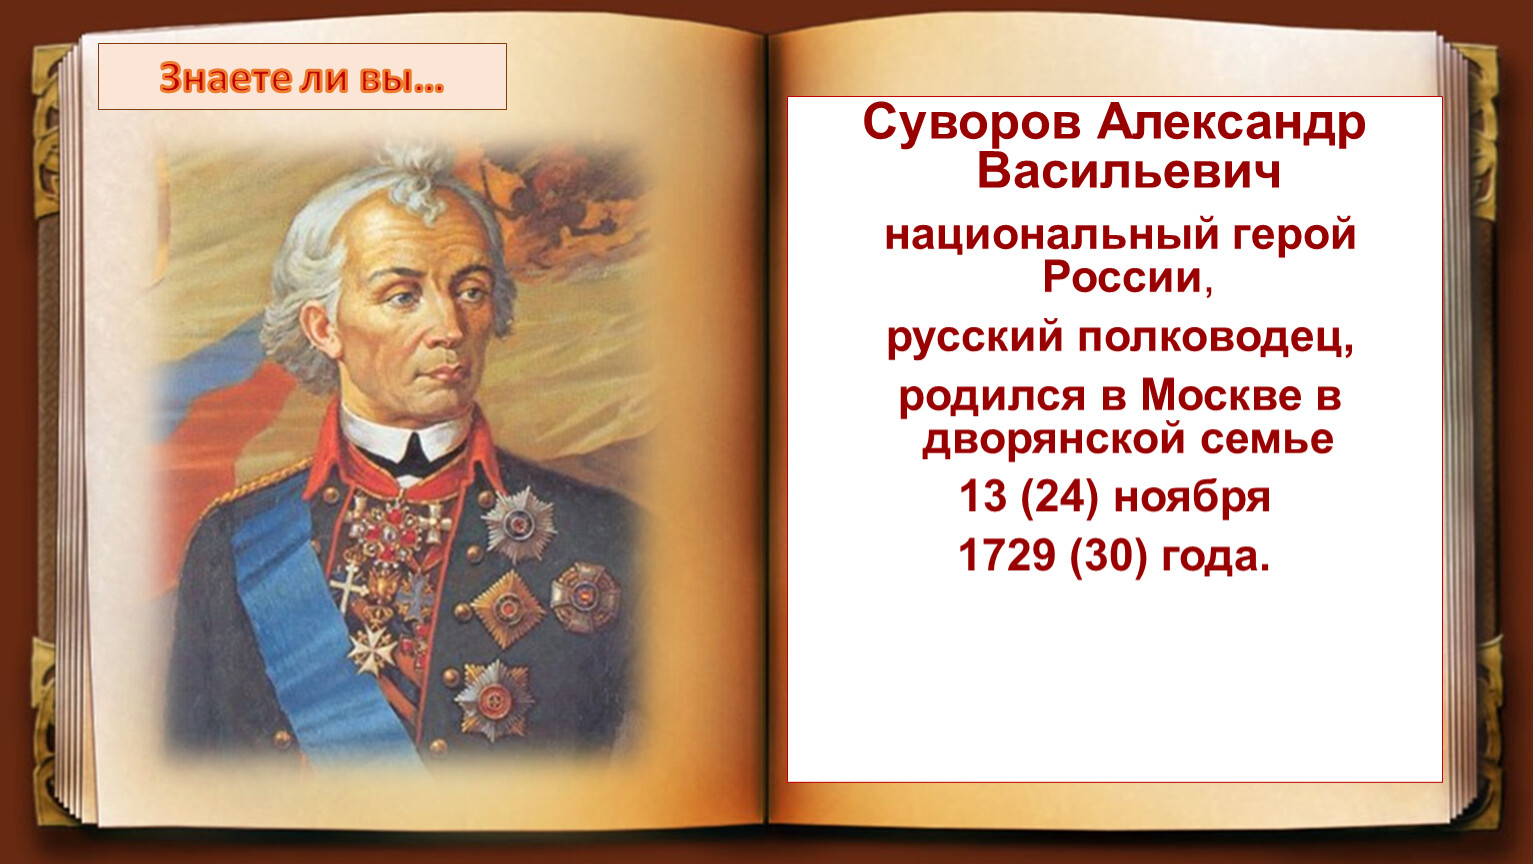 В каких сражениях участвовал суворов названия. Александер Васильевич Суворов Великий русский.